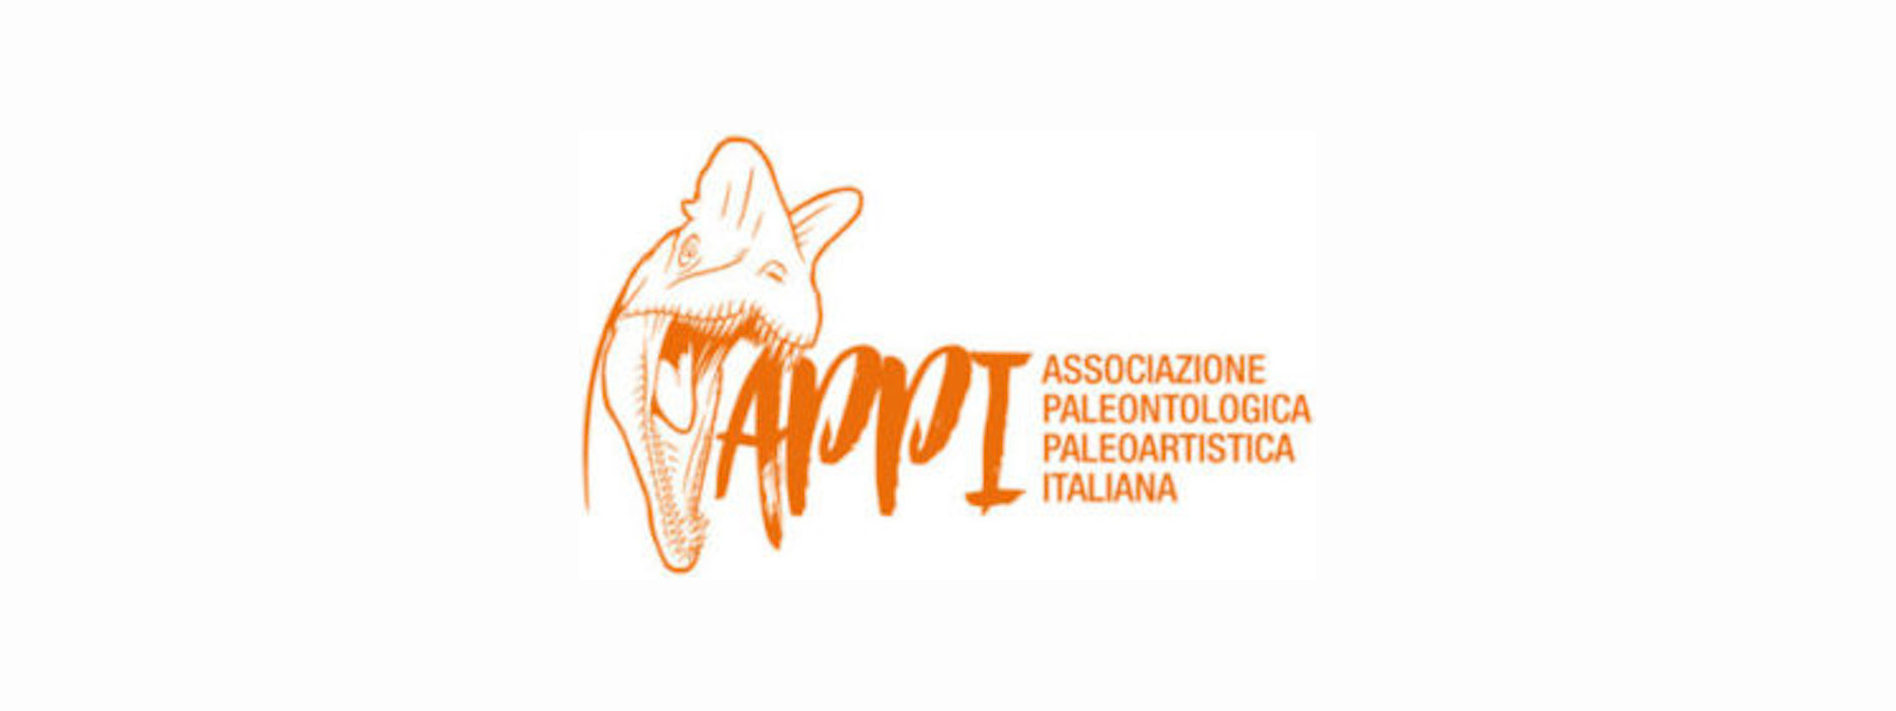 APPI logo 2 e1515169802263 1